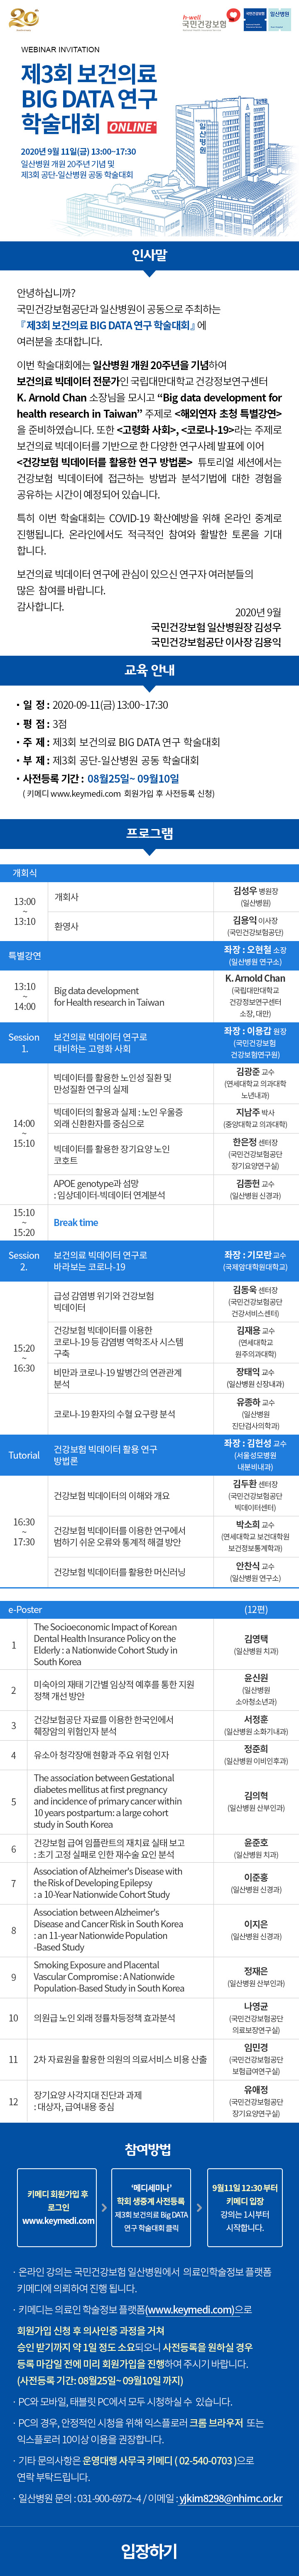 [안내] 제3회 보건의료 BIG DATA 연구 학술대회 온라인 개최 (2020.9.11.)